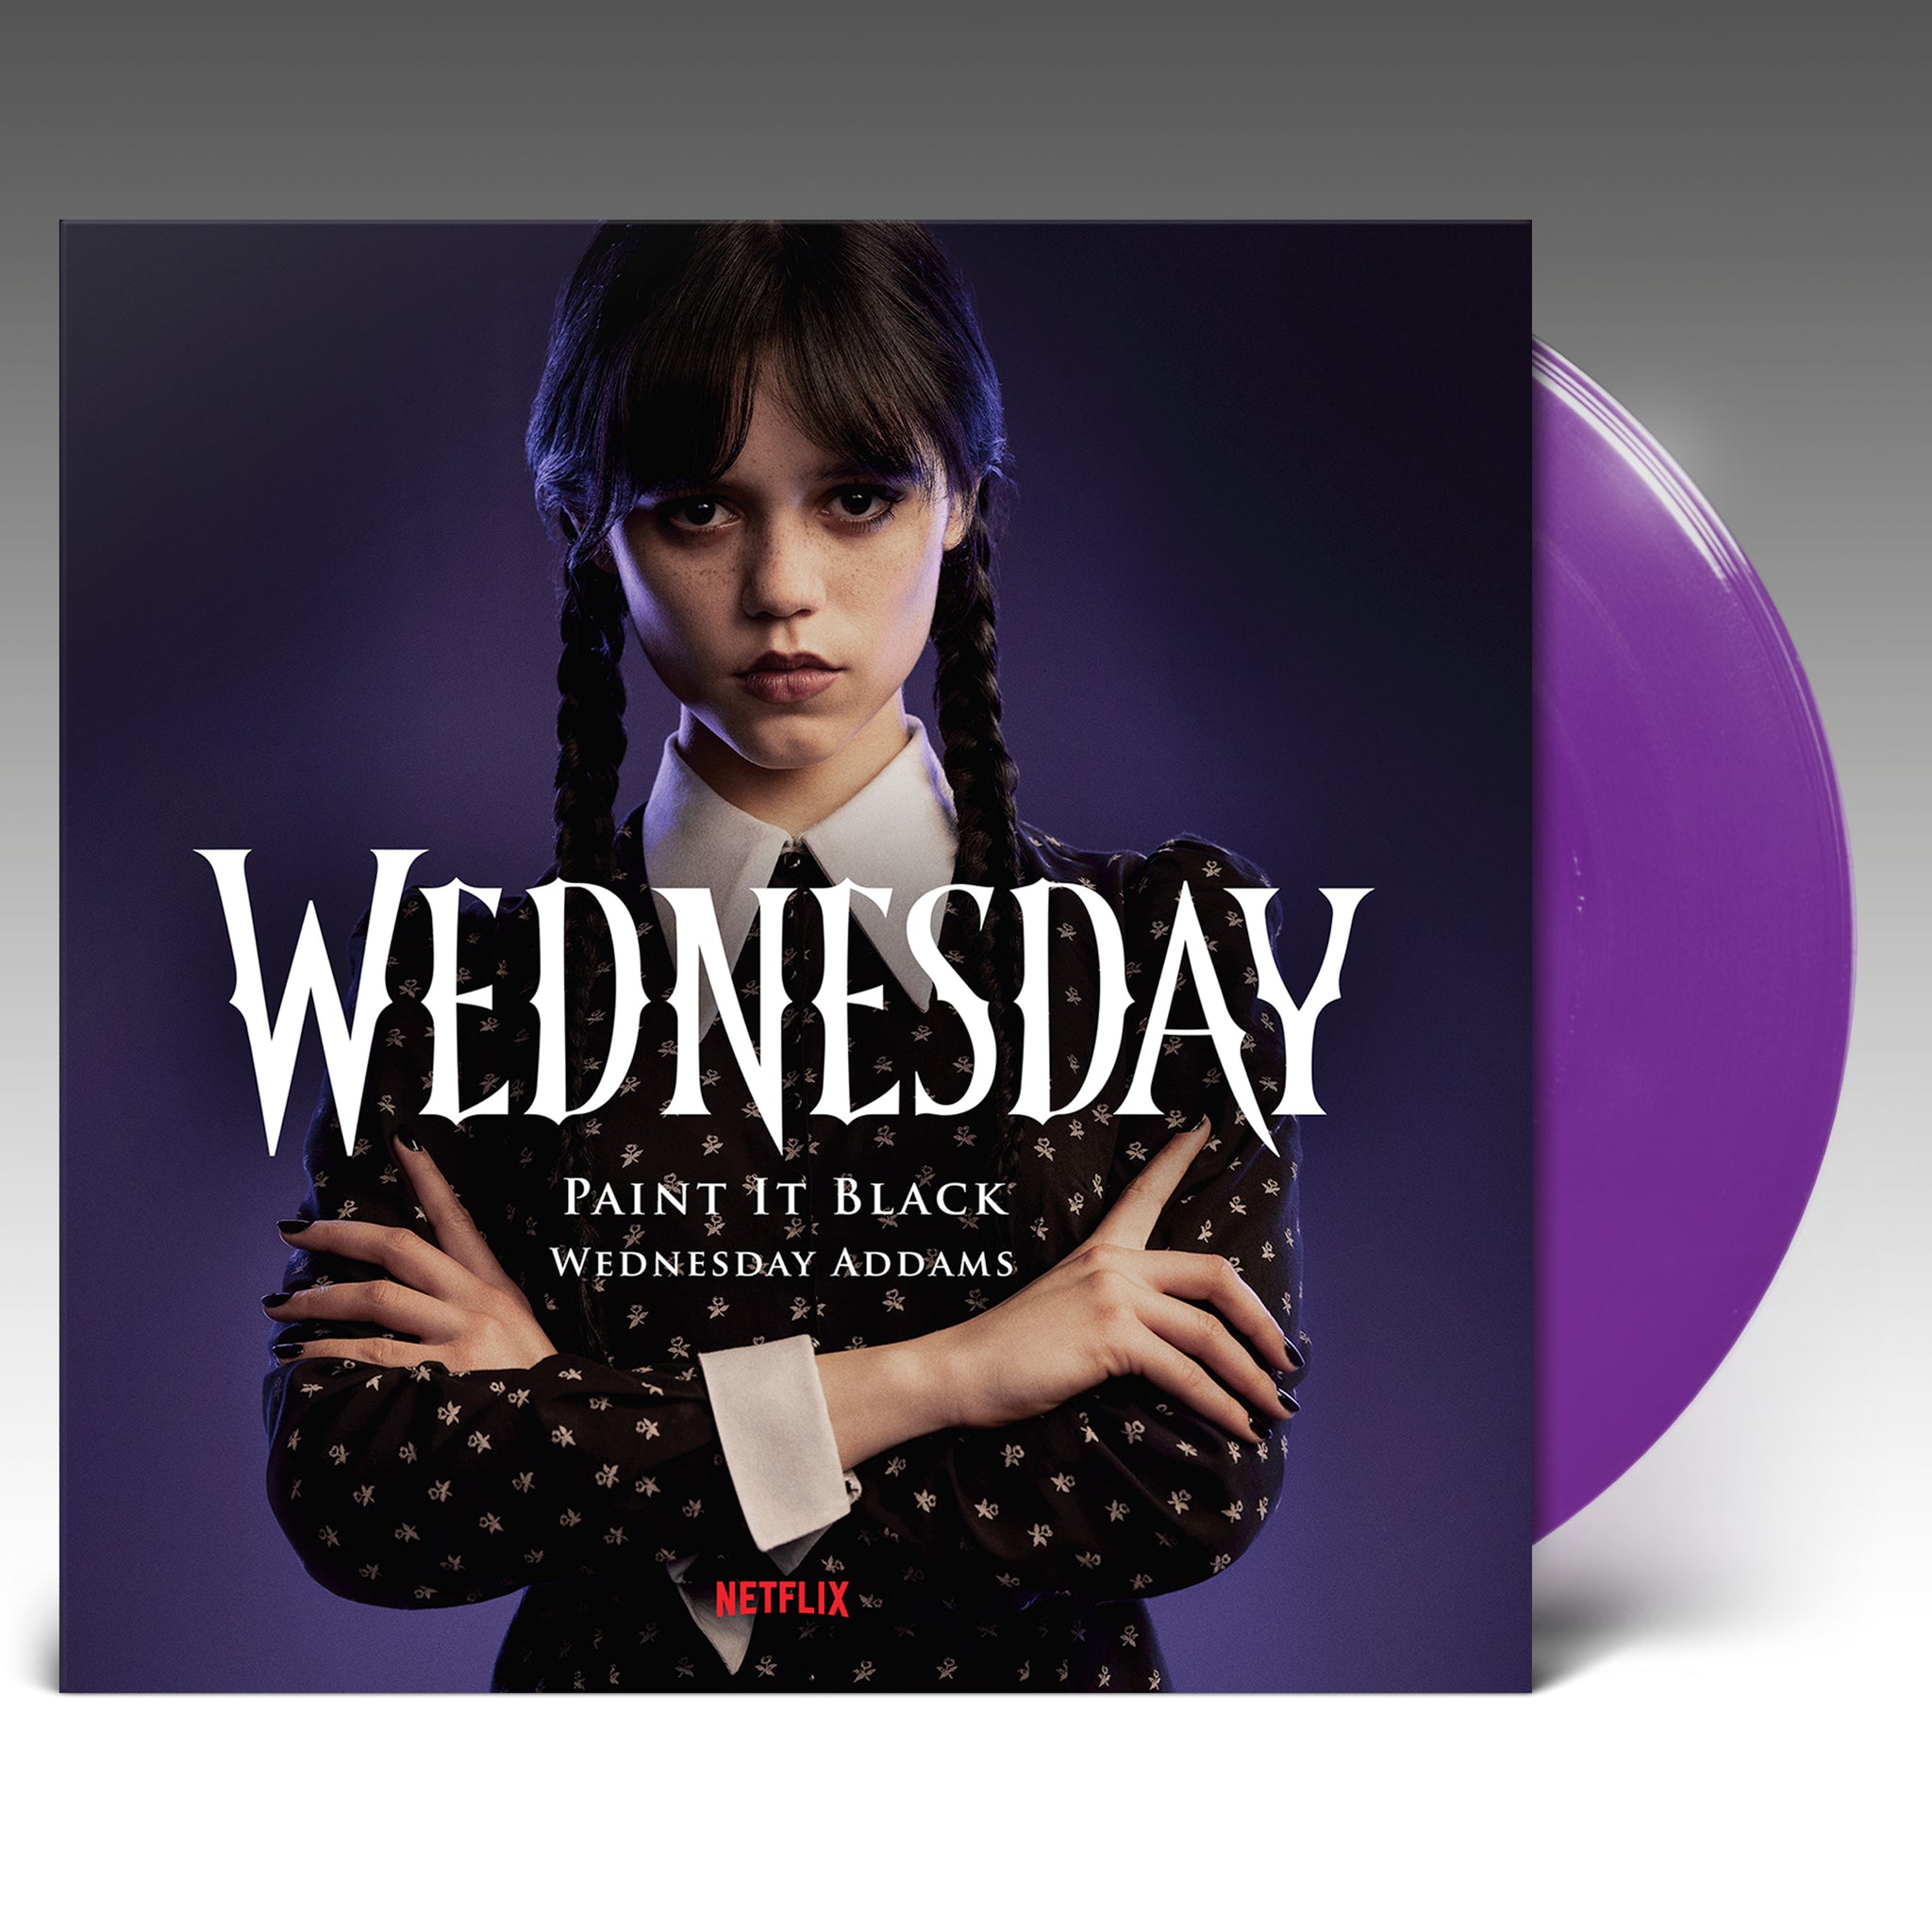 Netflix Releases Wednesday Vinyl Soundtrack by Danny Elfman